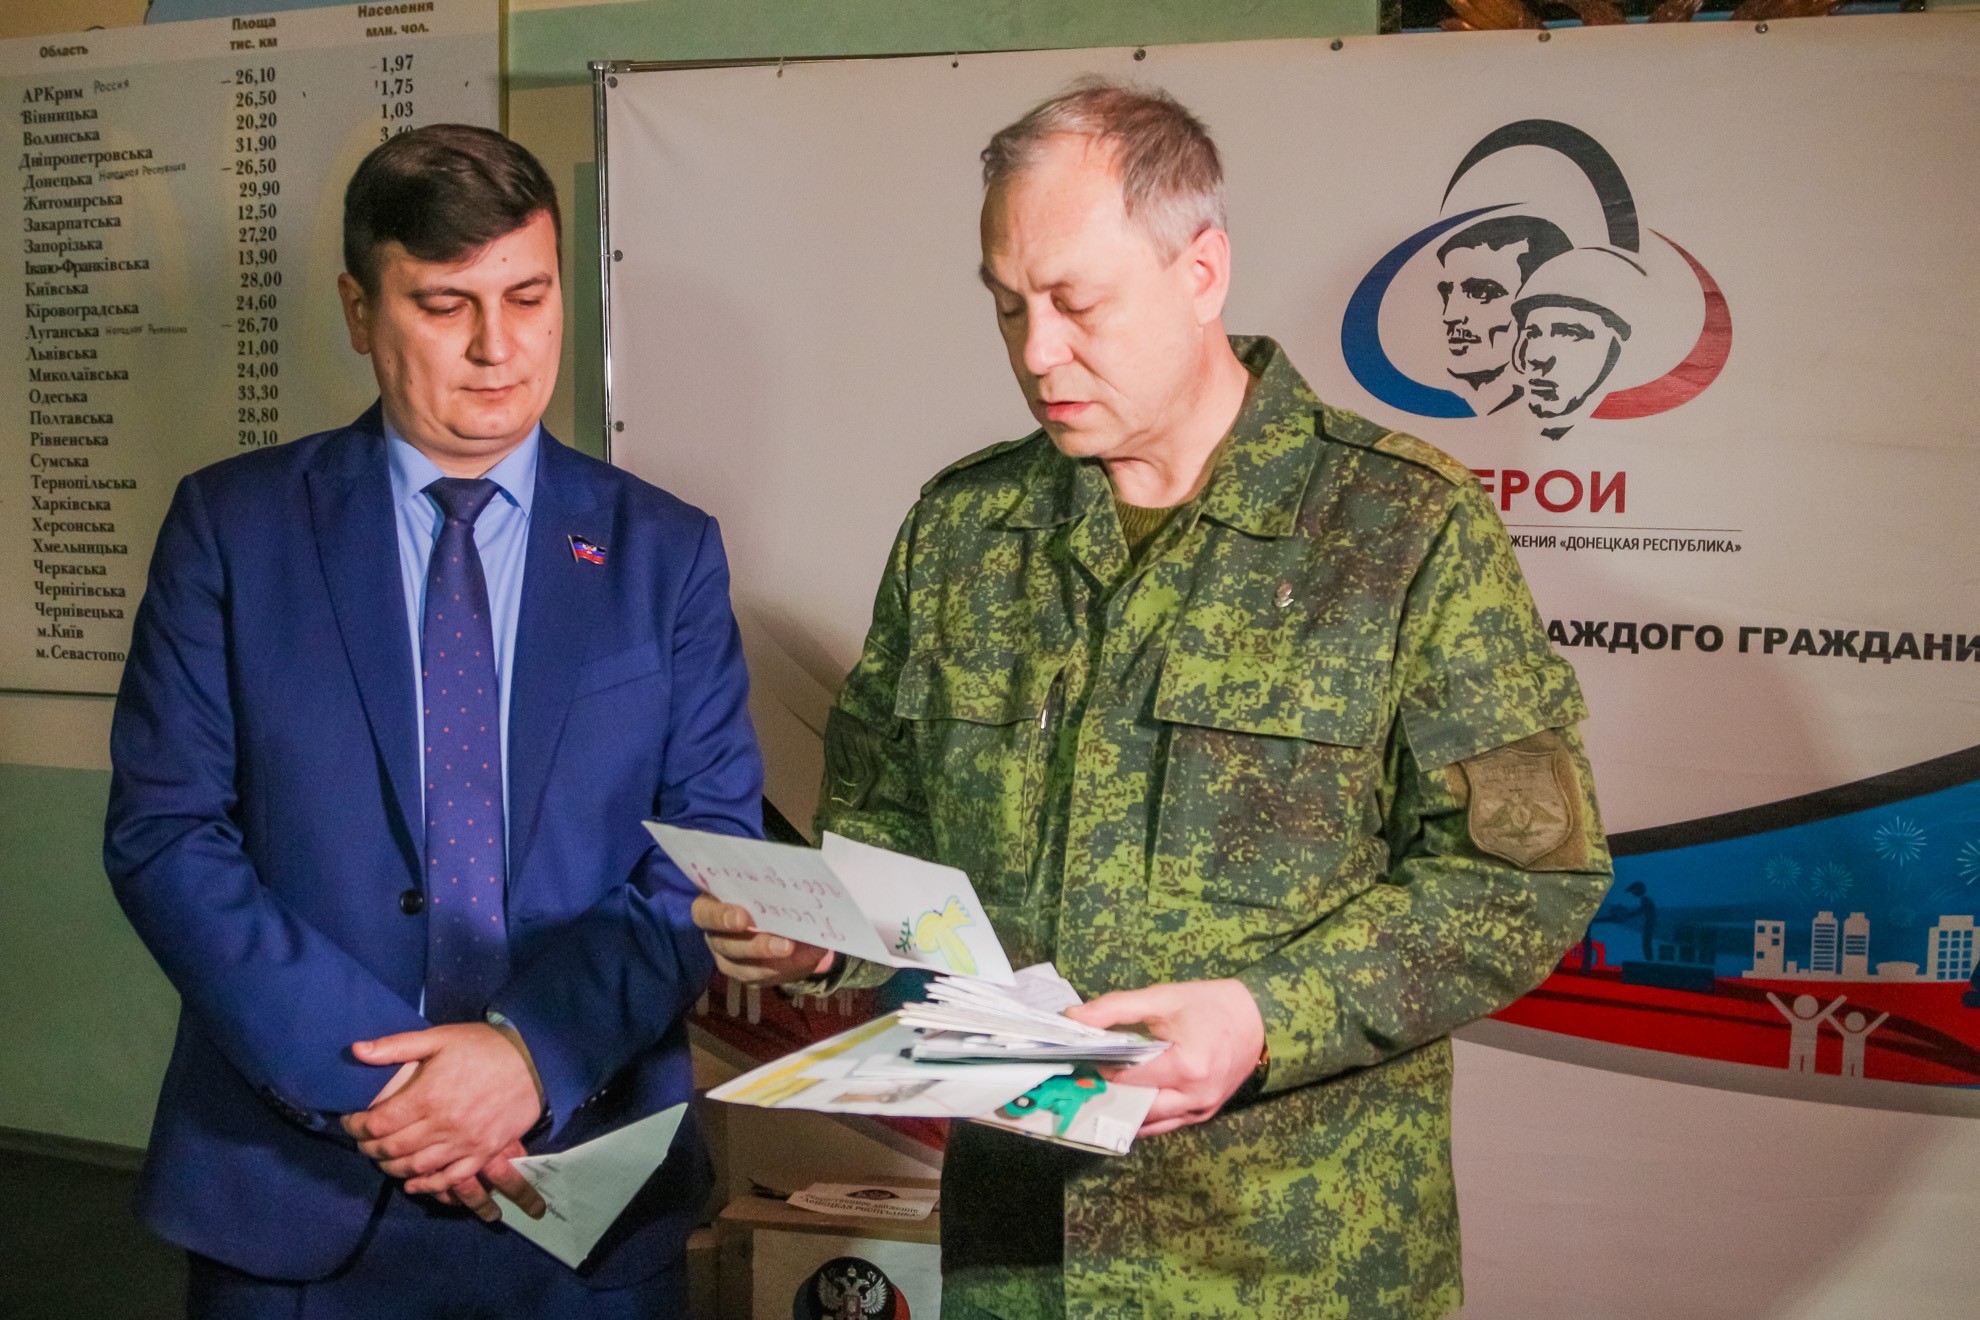 Ко Дню защитника Отечества военнослужащим ДНР были переданы поздравления и посылки от активистов Общественного Движения «Донецкая Республика»